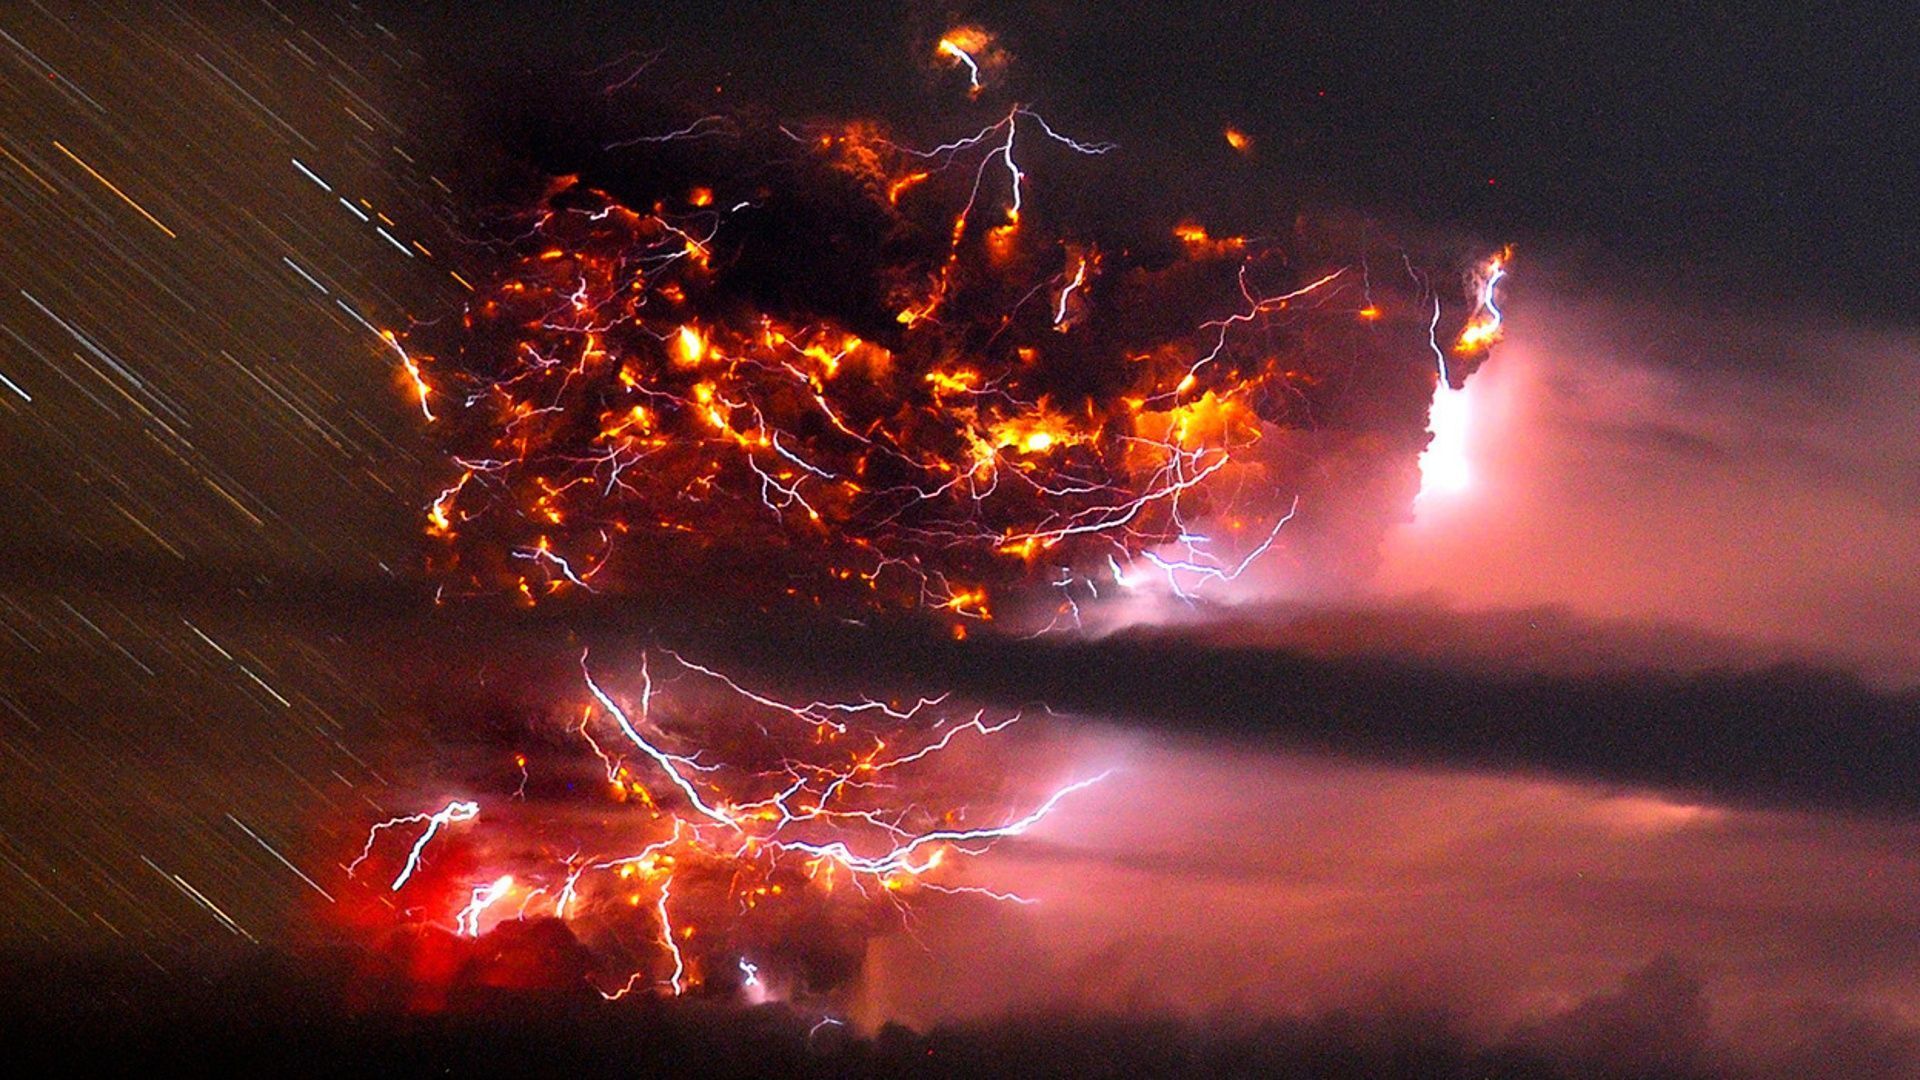 Volcano Eruption Lightning - wallpaper.